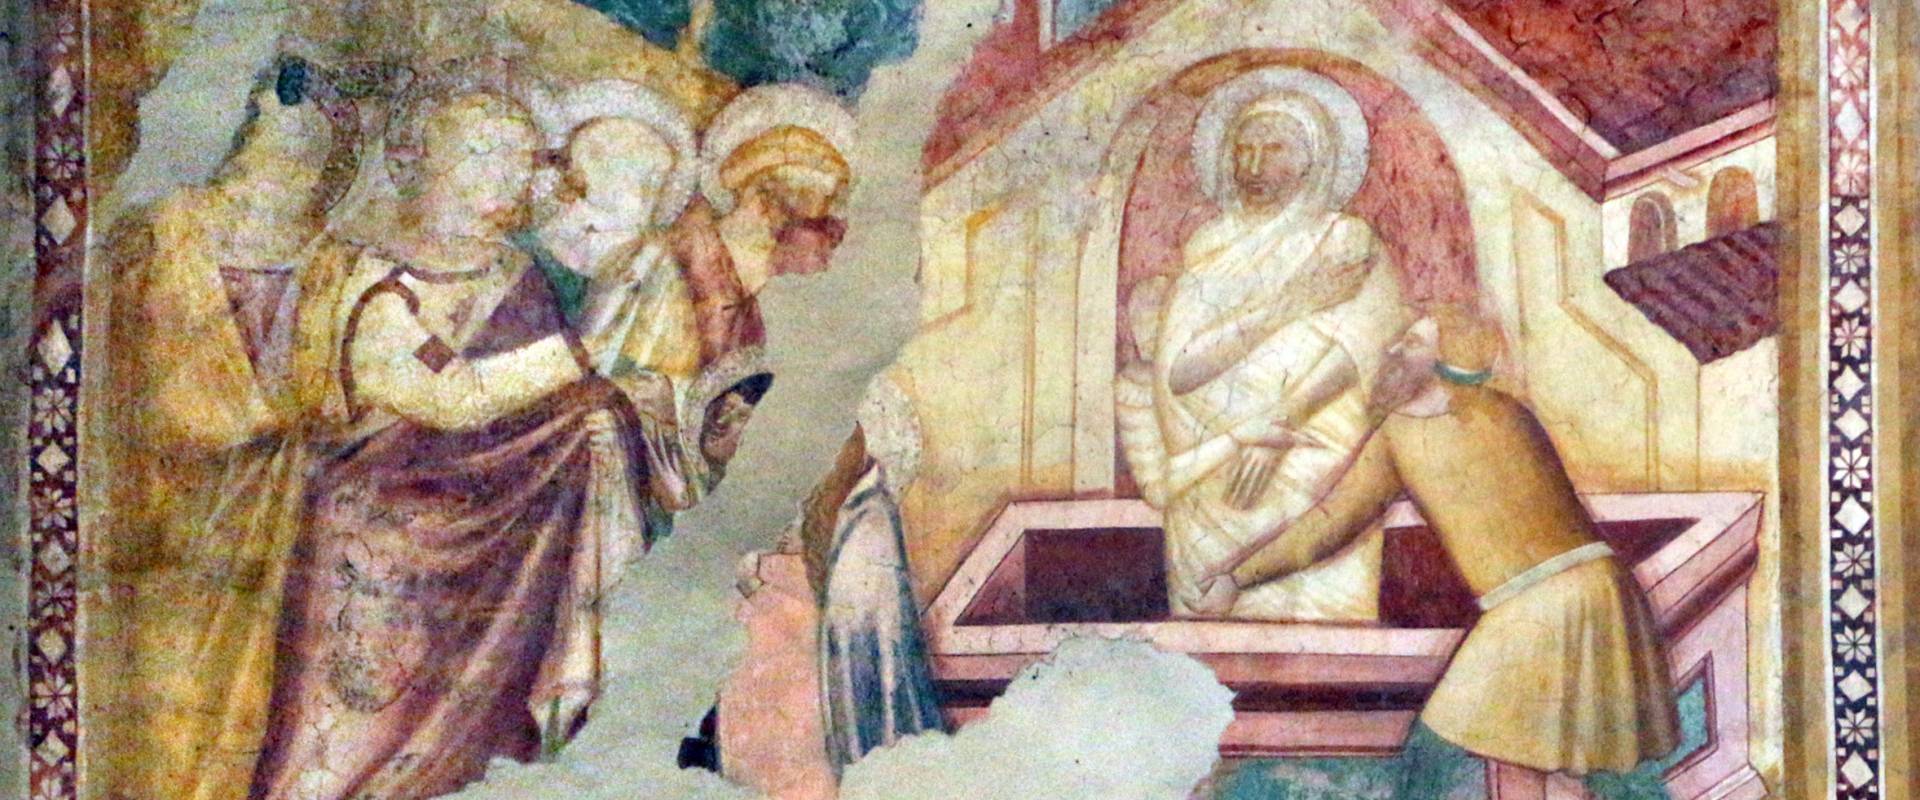 Scuola bolognese, ciclo dell'abbazia di pomposa, 1350 ca., nuovo testamento, 10 resurrezione di lazzaro photo by Sailko